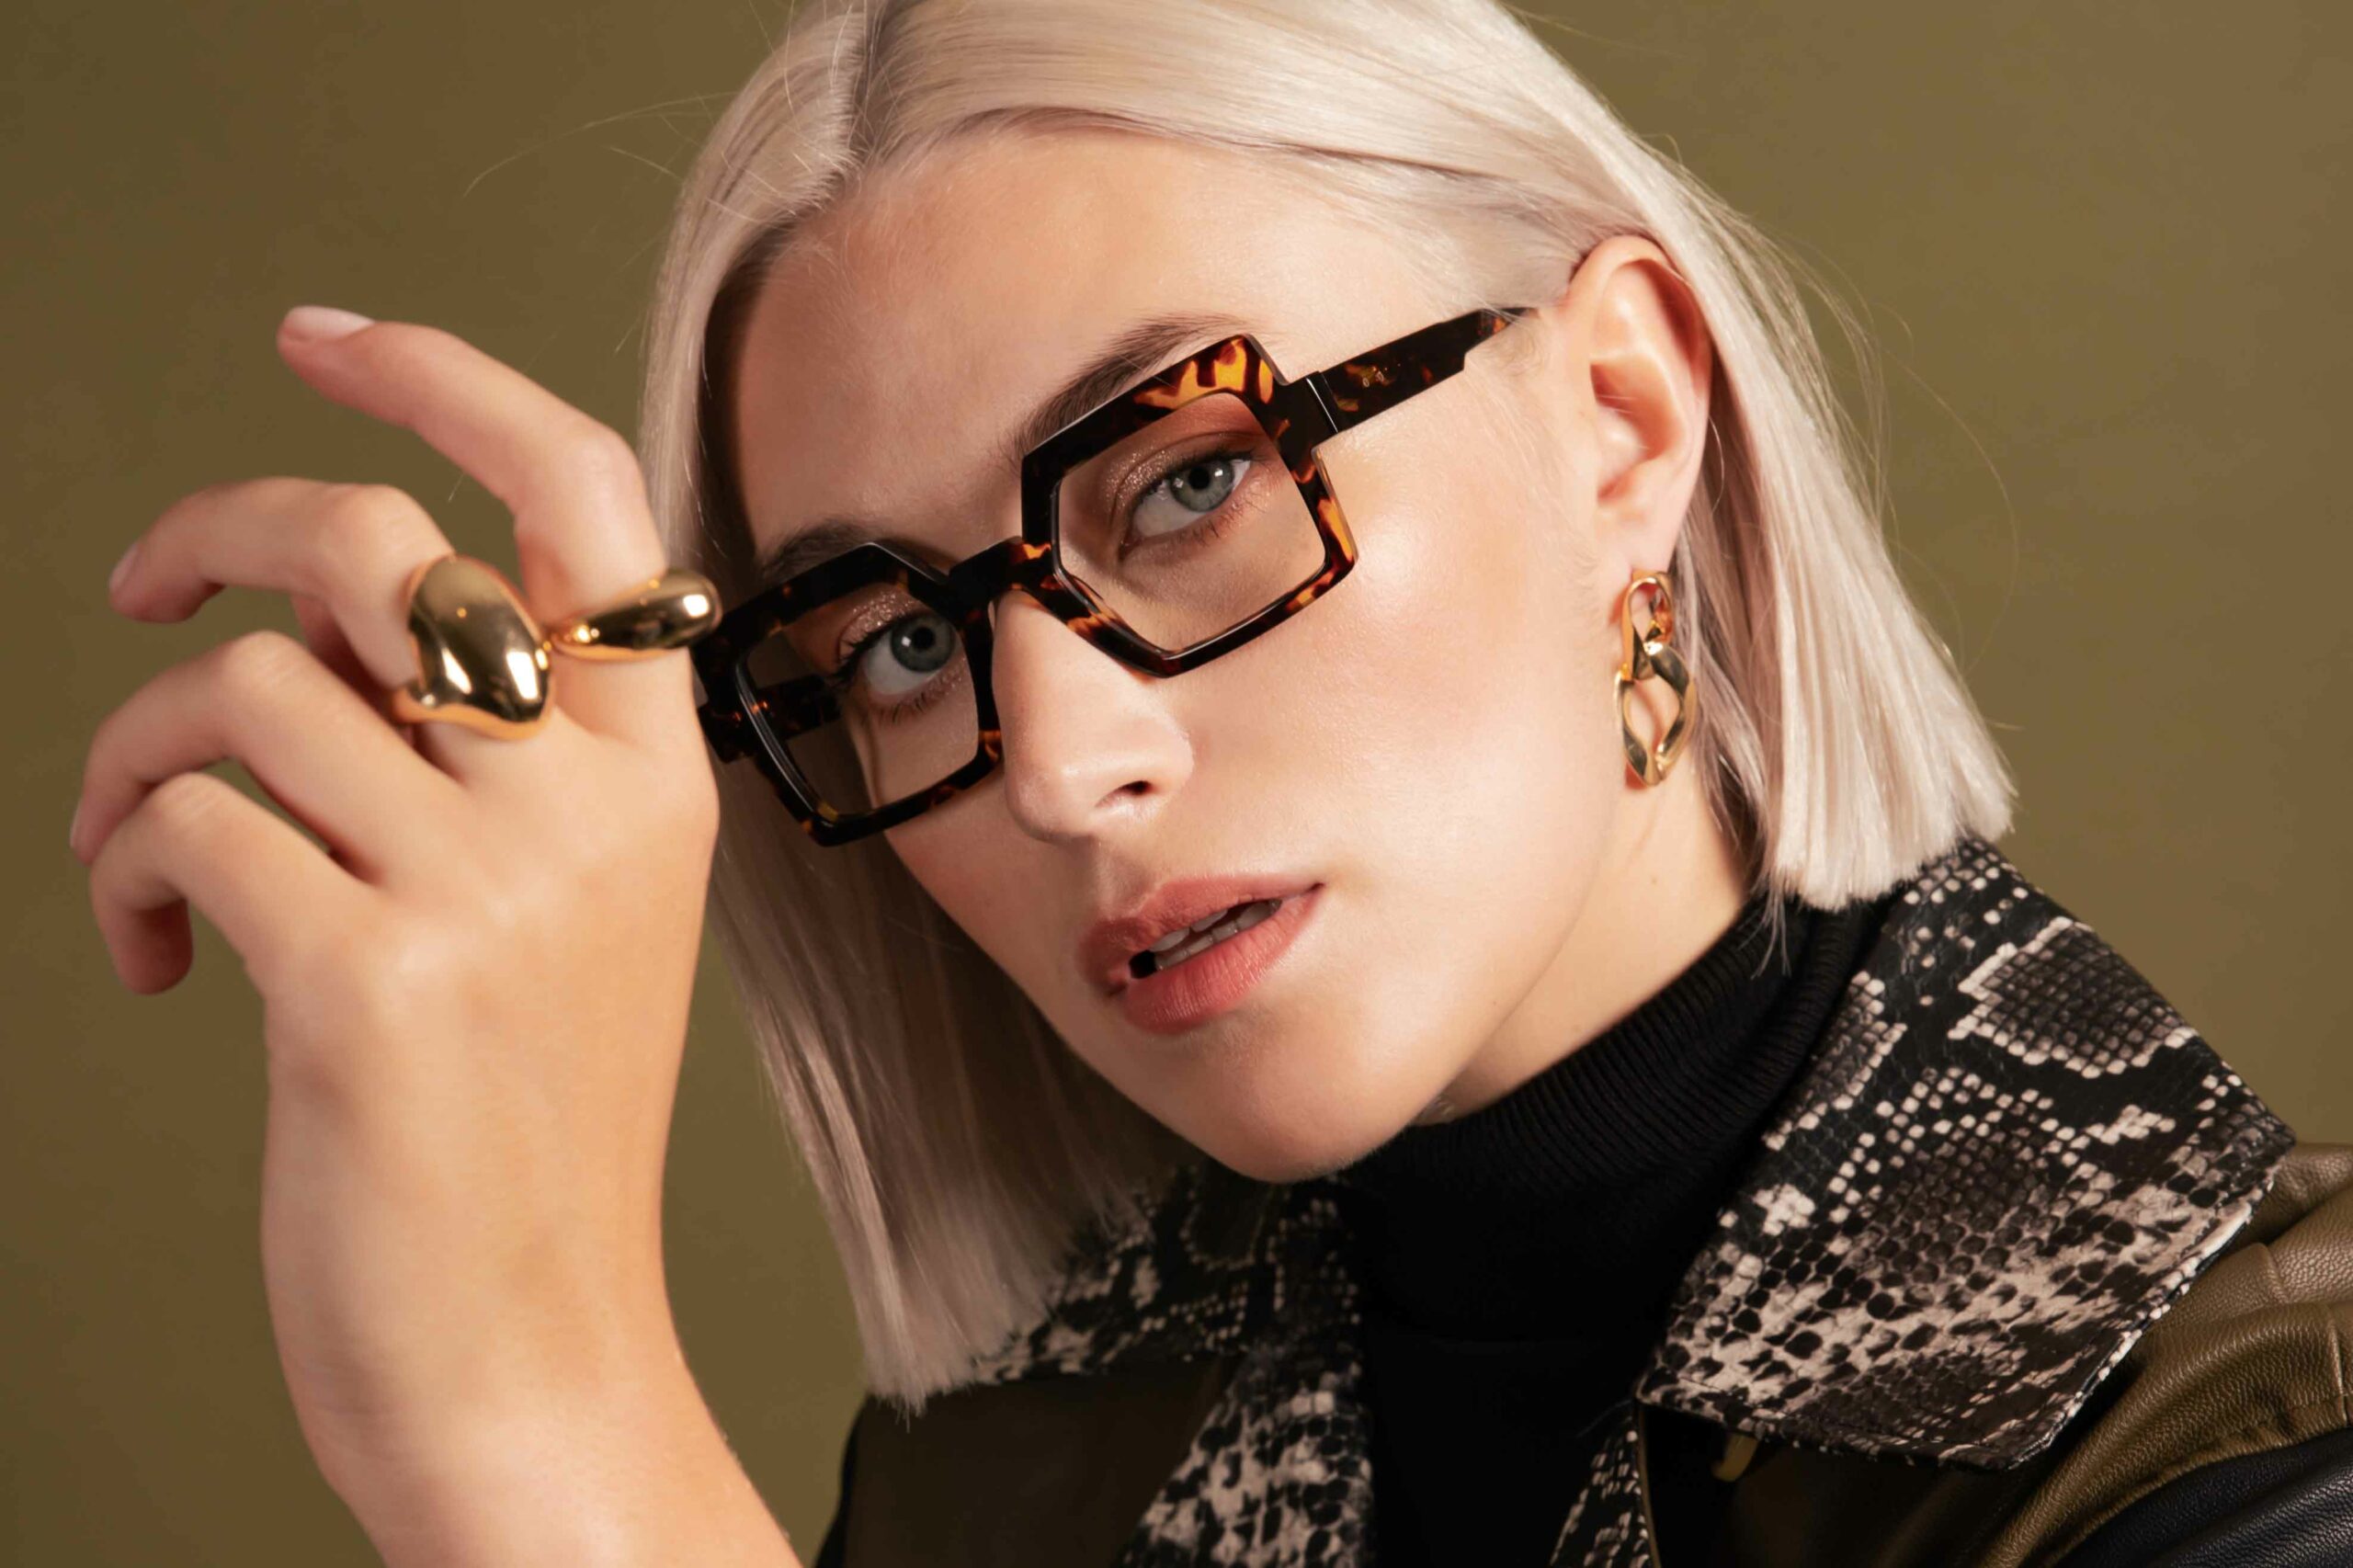 Dames brillen - brillen voor vrouwen van alle topmerken - Optiek Lammerant